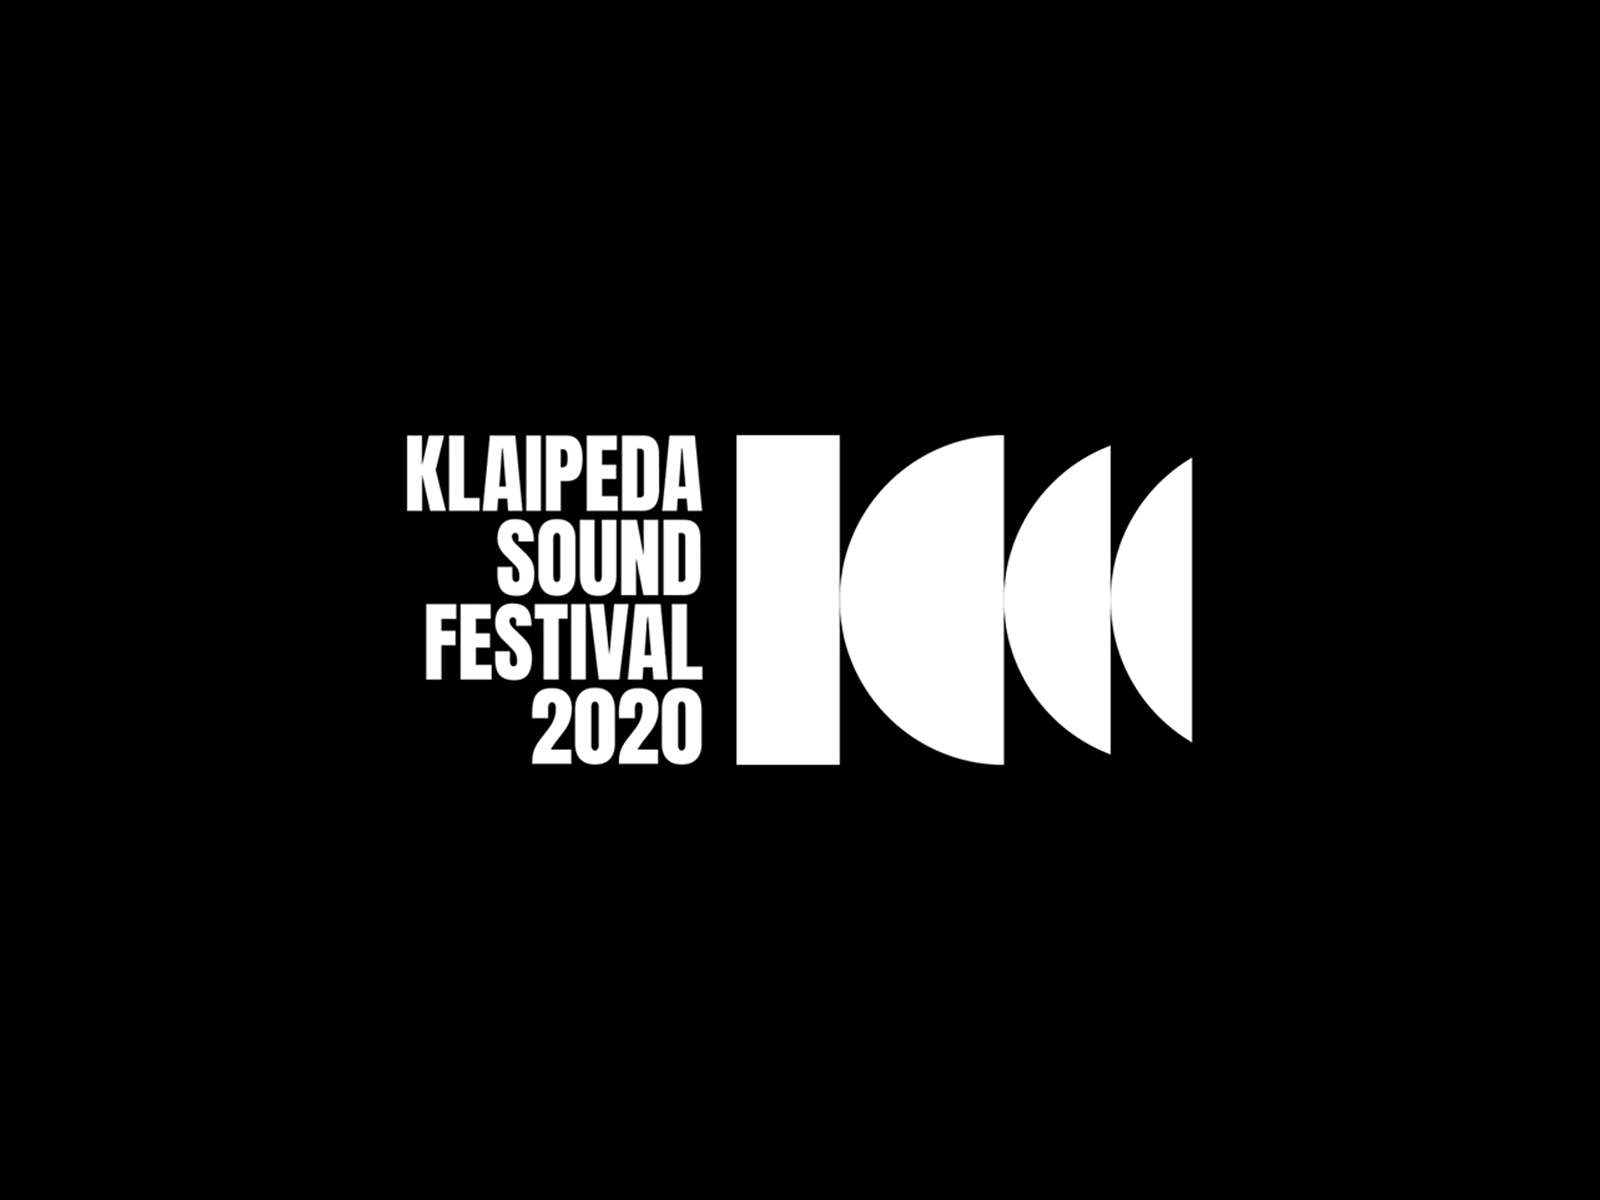 Klaipeda Sound Festival live on Behance!